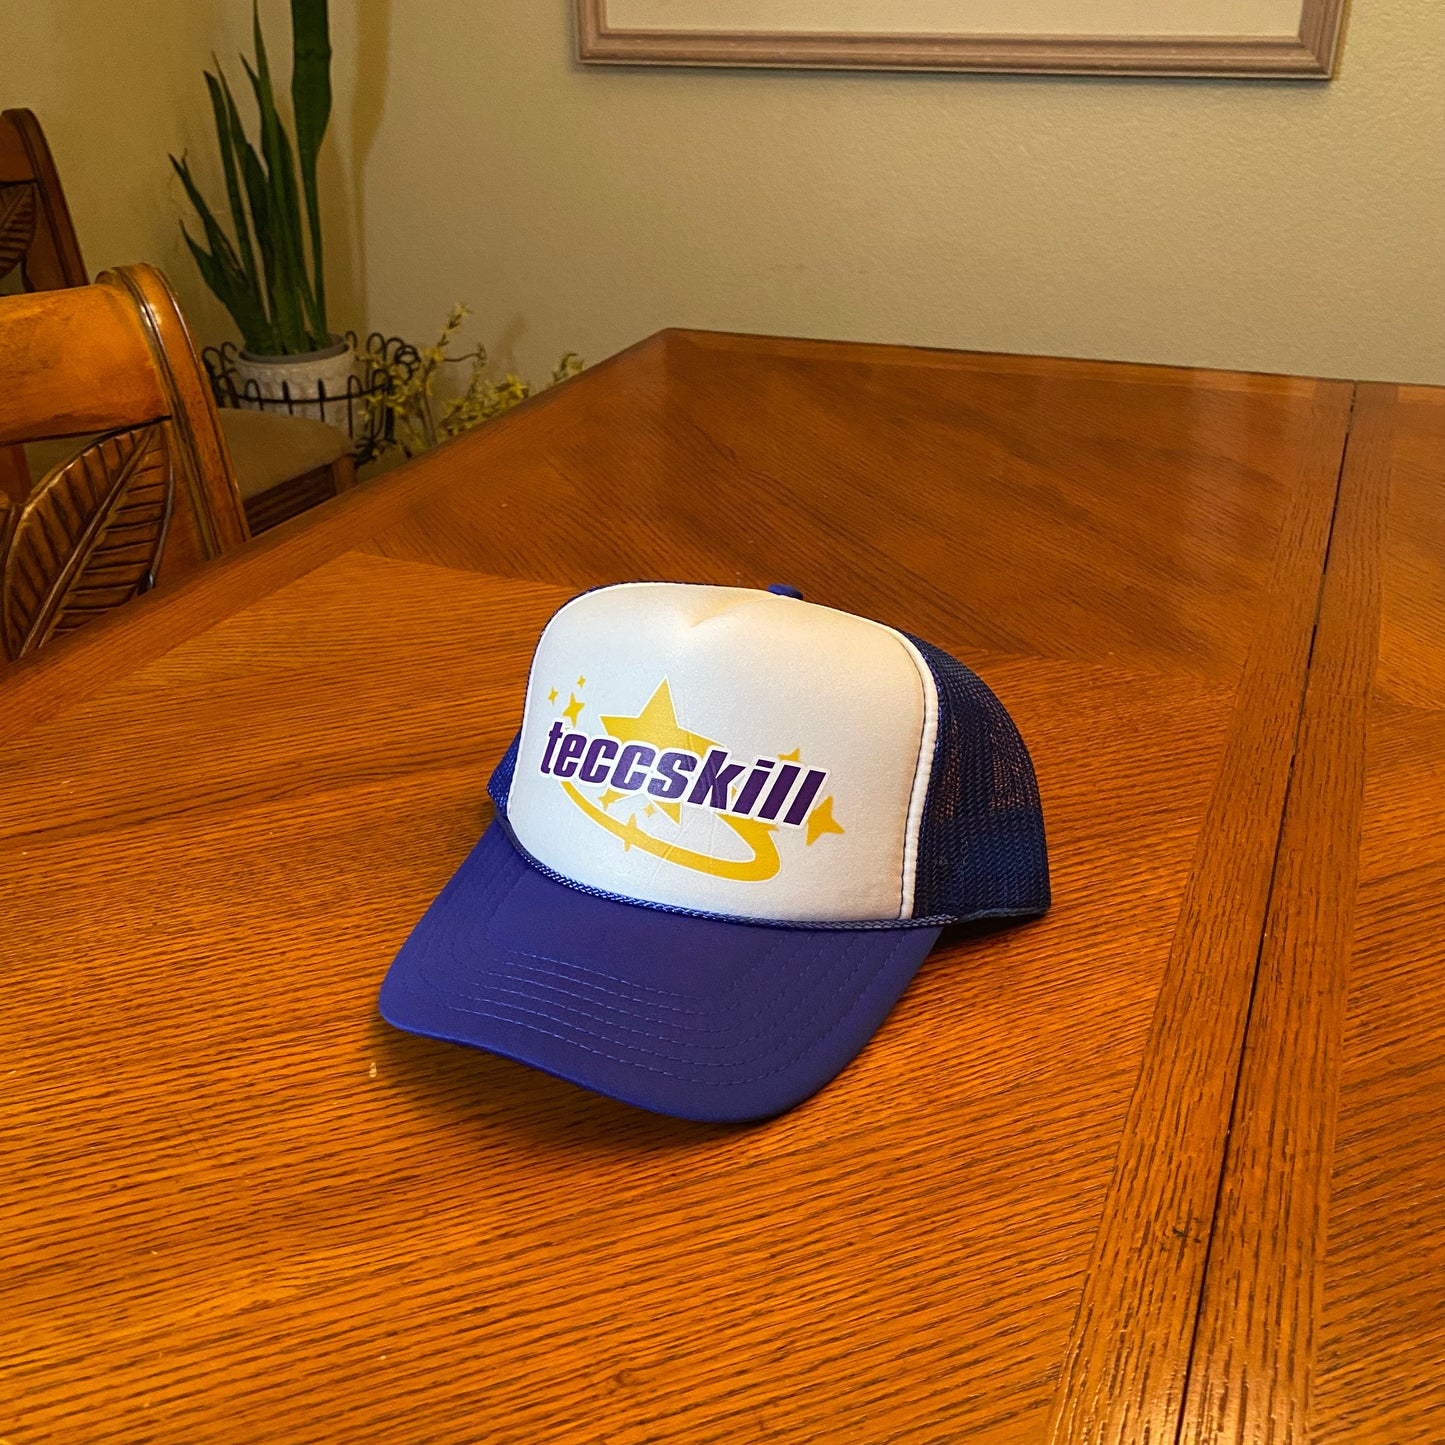 teccskill Trucker Hat